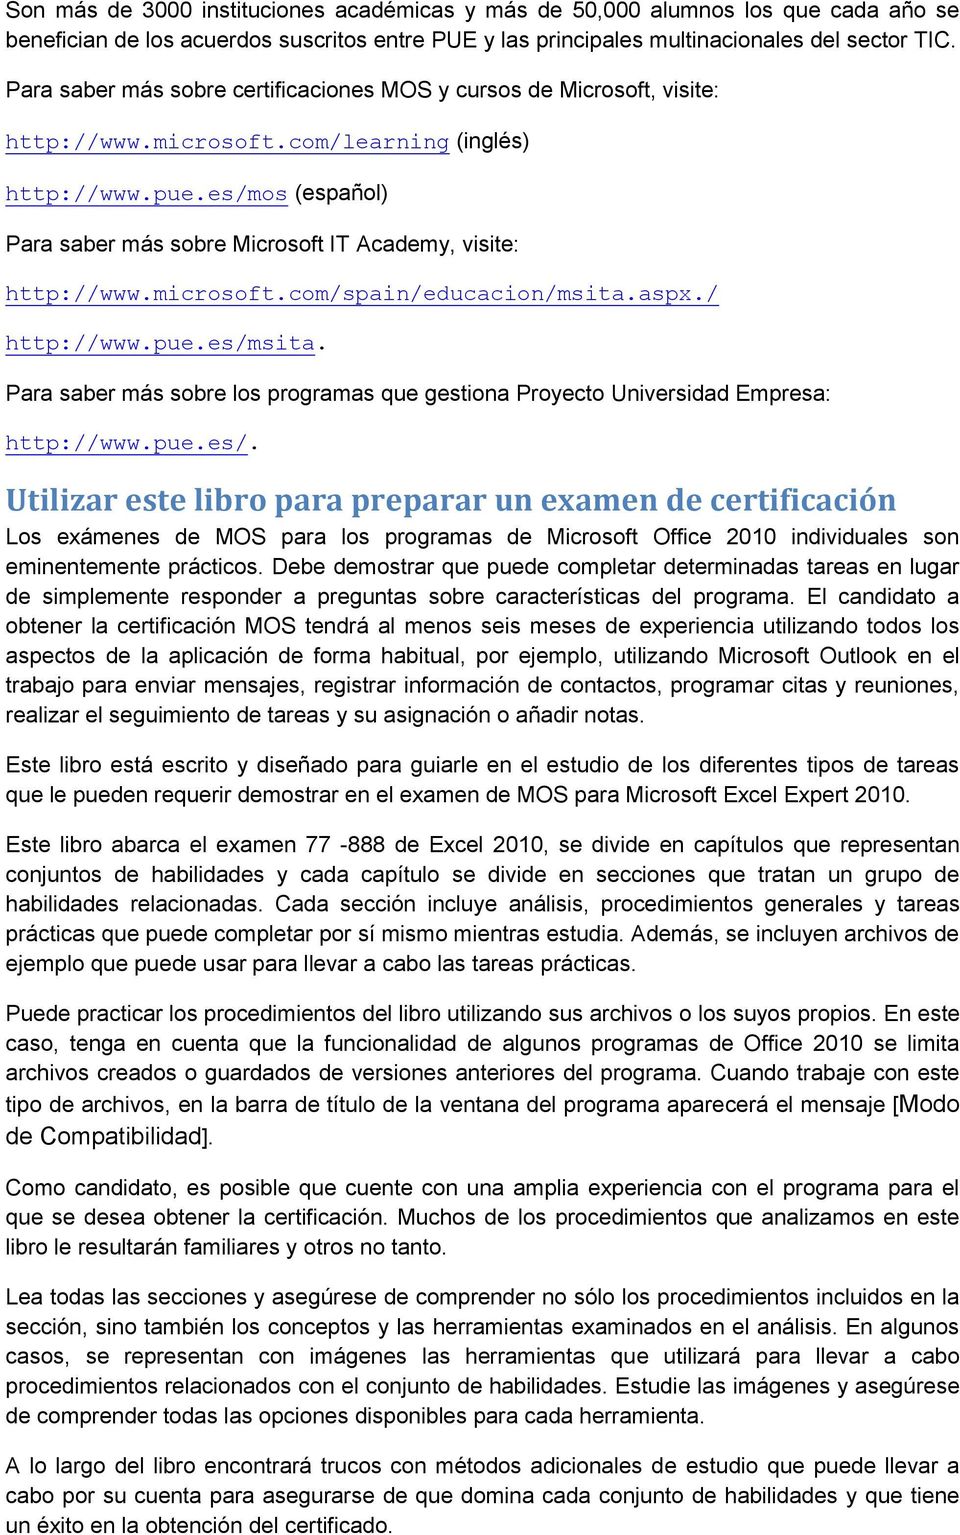 es/mos (español) Para saber más sobre Microsoft IT Academy, visite: http://www.microsoft.com/spain/educacion/msita.aspx./ http://www.pue.es/msita.